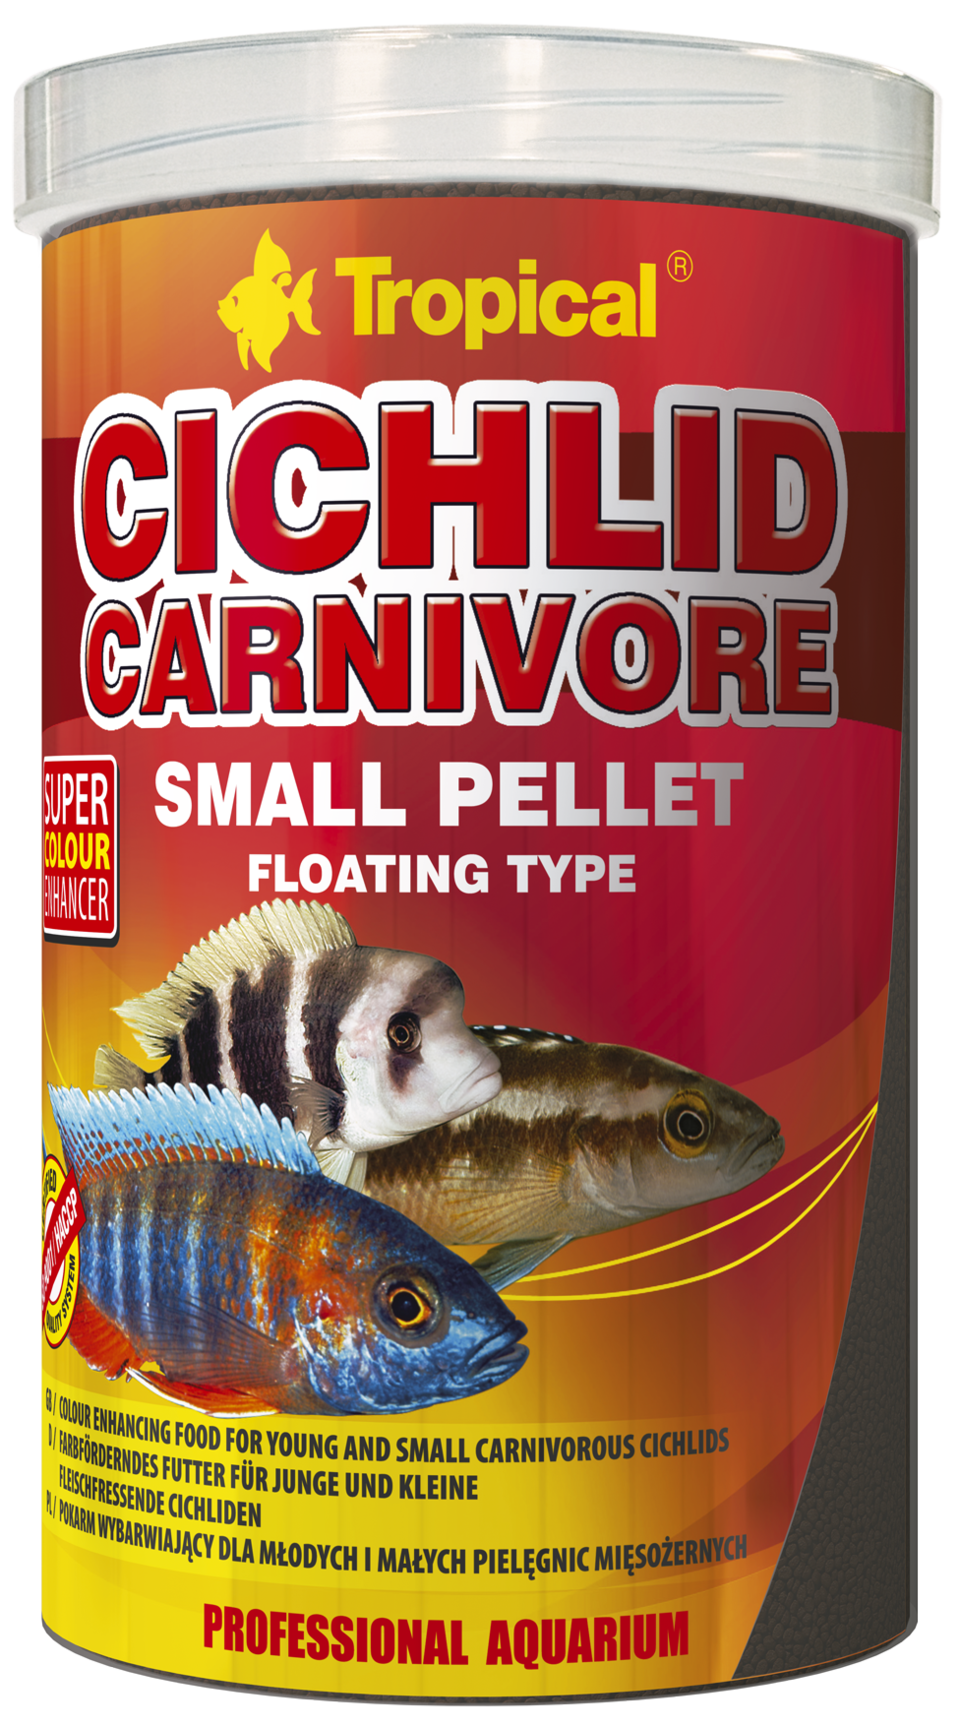 TROPICAL Cichlid Carnivore Small Pellet 250ml nourriture pour cichlidés carnivores jeunes ou de petite taille